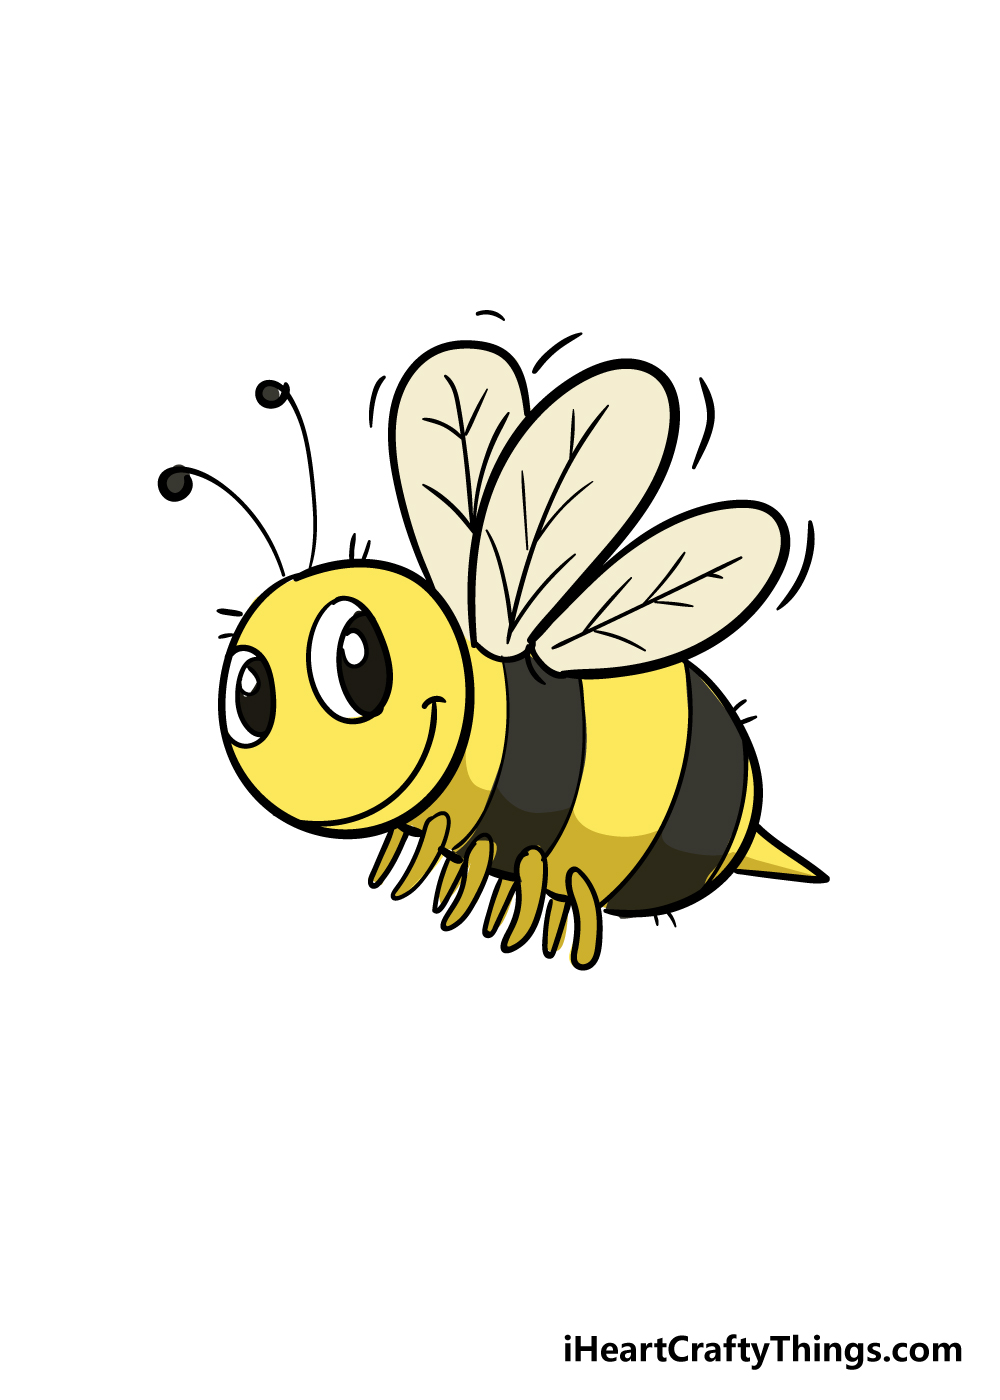 Bee7 - Hướng dẫn chi tiết cách vẽ con ong đơn giản với 7 bước cơ bản